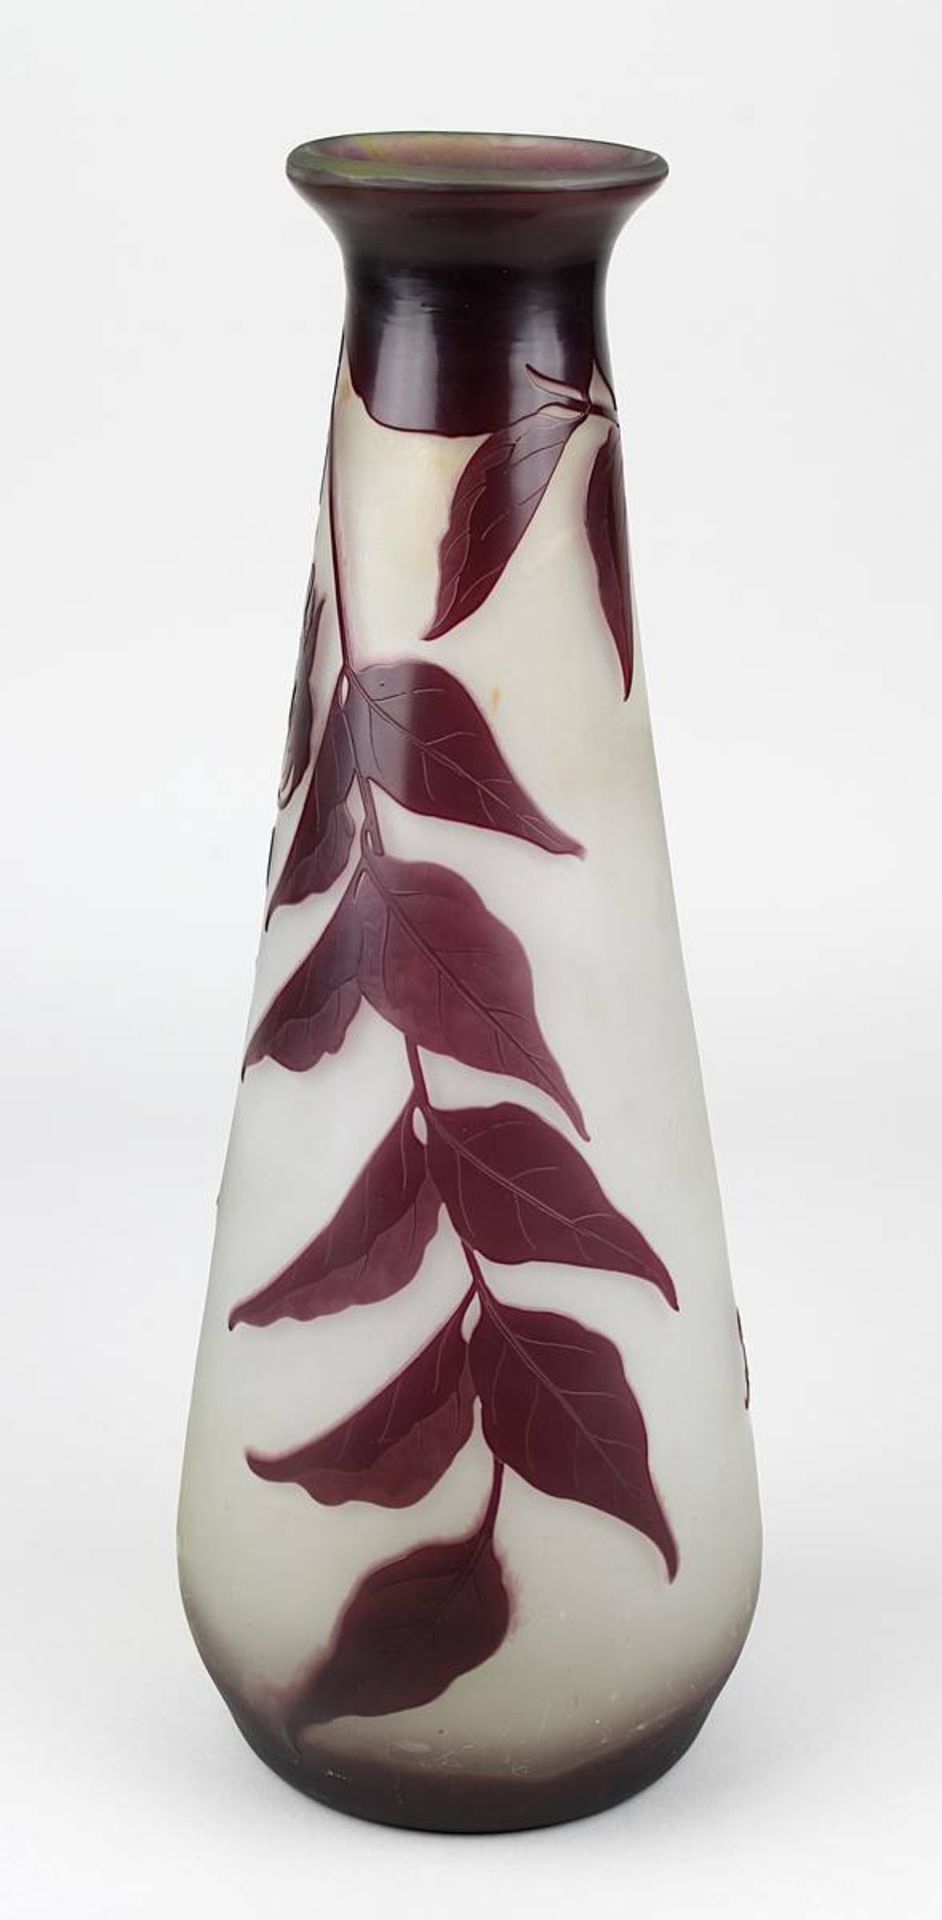 Gallé Jugendstil-Vase mit Glyciniendekor, Nancy 1906-14, keulenförmiger Klarglaskorpus innen mit - Image 3 of 4